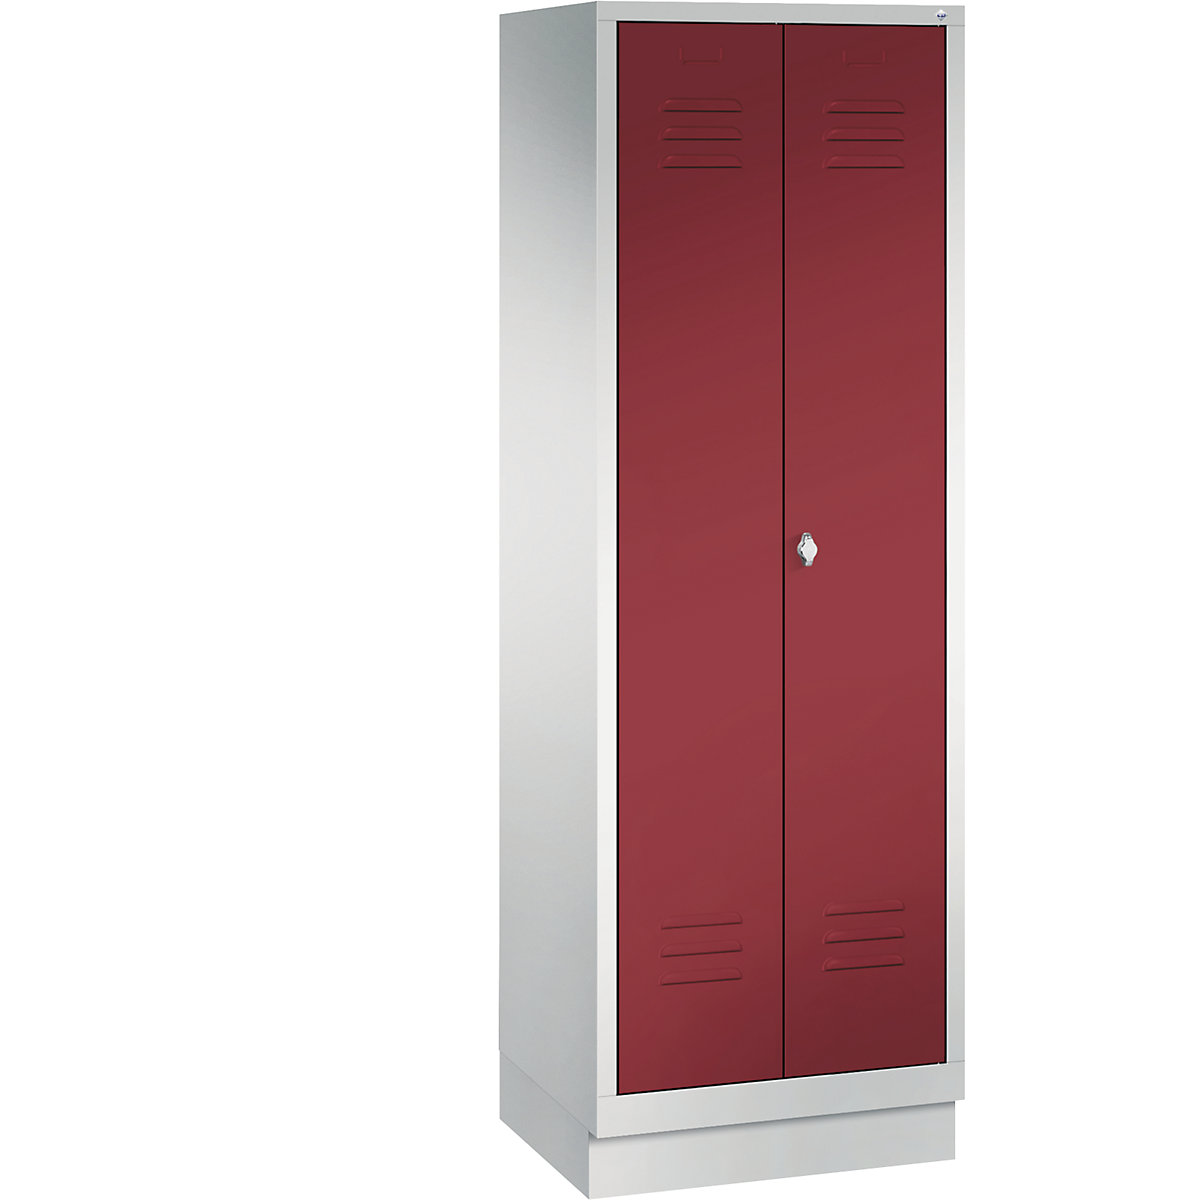 CLASSIC úložná skriňa so soklom, oproti sebe sa zatvárajúce dvere – C+P, 2 boxy, šírka boxu 300 mm, svetlošedá / rubínová červená-12